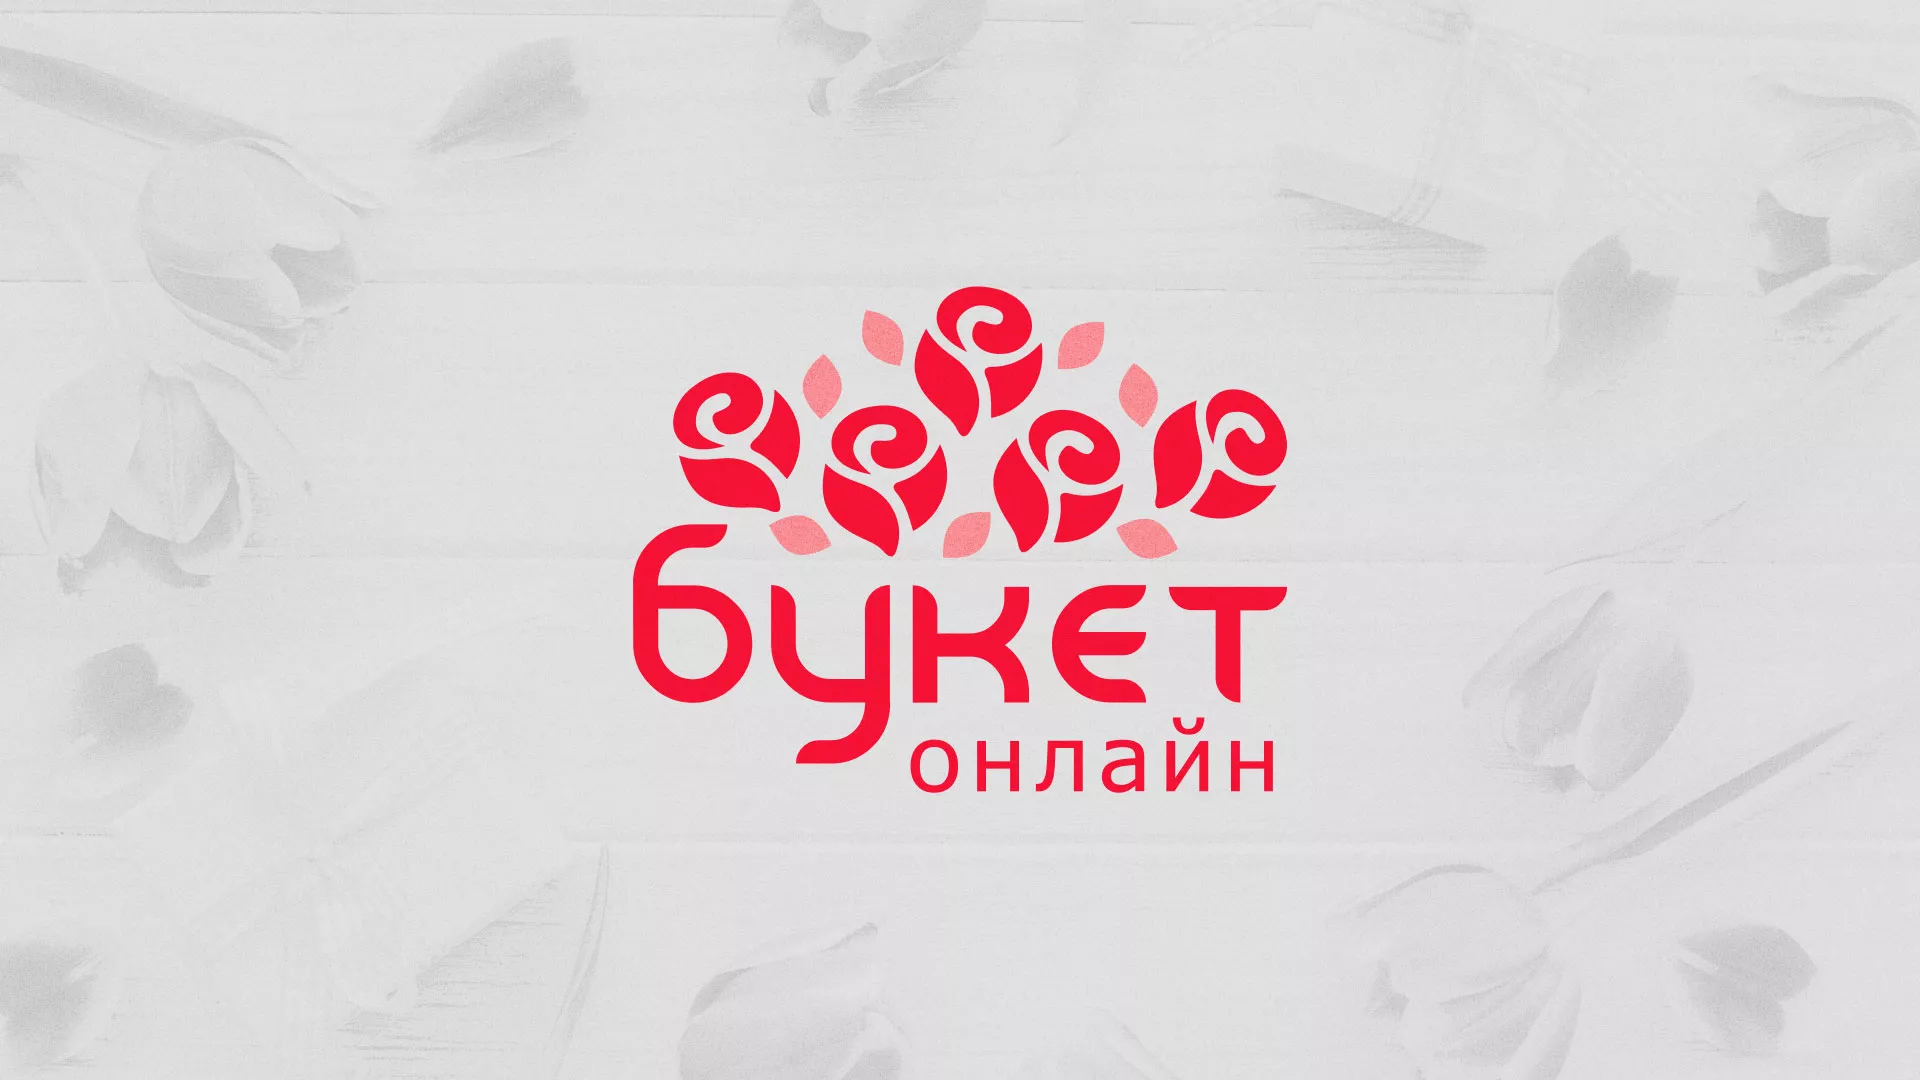 Создание интернет-магазина «Букет-онлайн» по цветам в Пошехонье